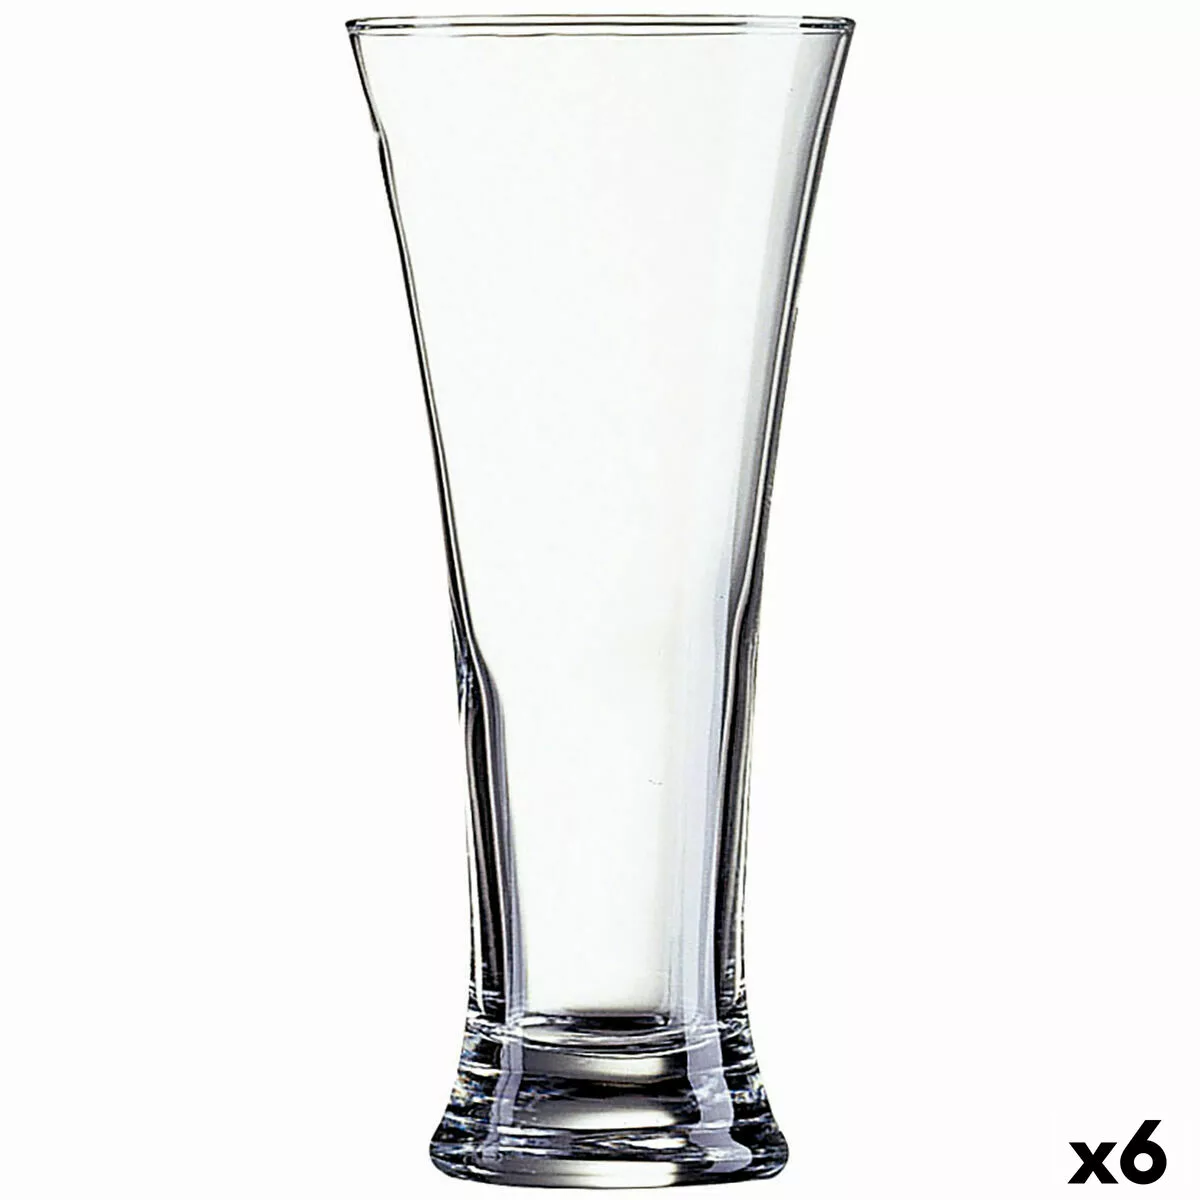 Becher Luminarc Martigues Durchsichtig Glas (330 Ml) (6 Stück) günstig online kaufen